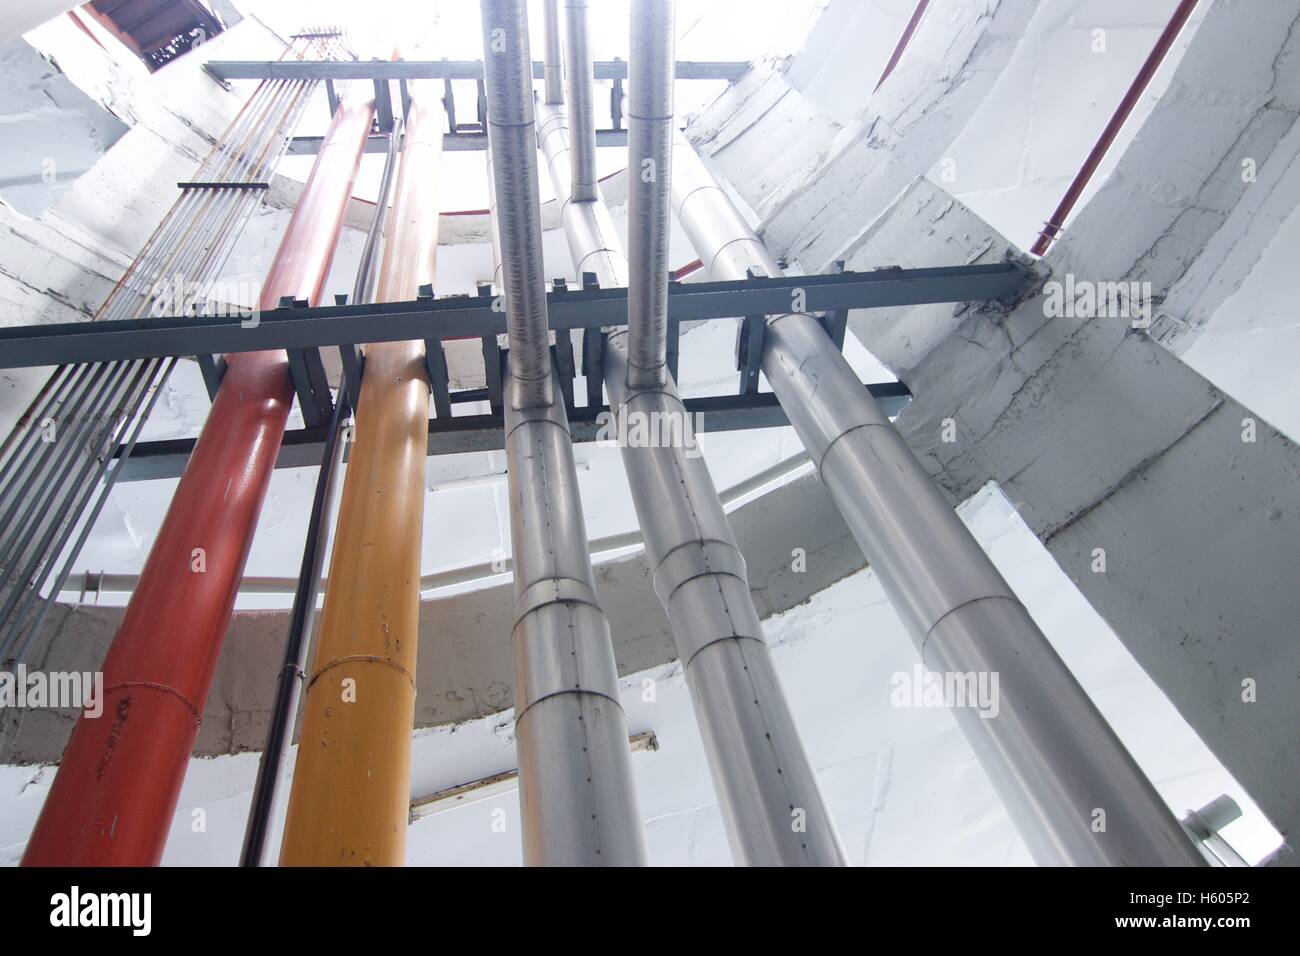 El sistema de construcción e industriales de agua tubos interiores de tubos de ventilación Foto de stock